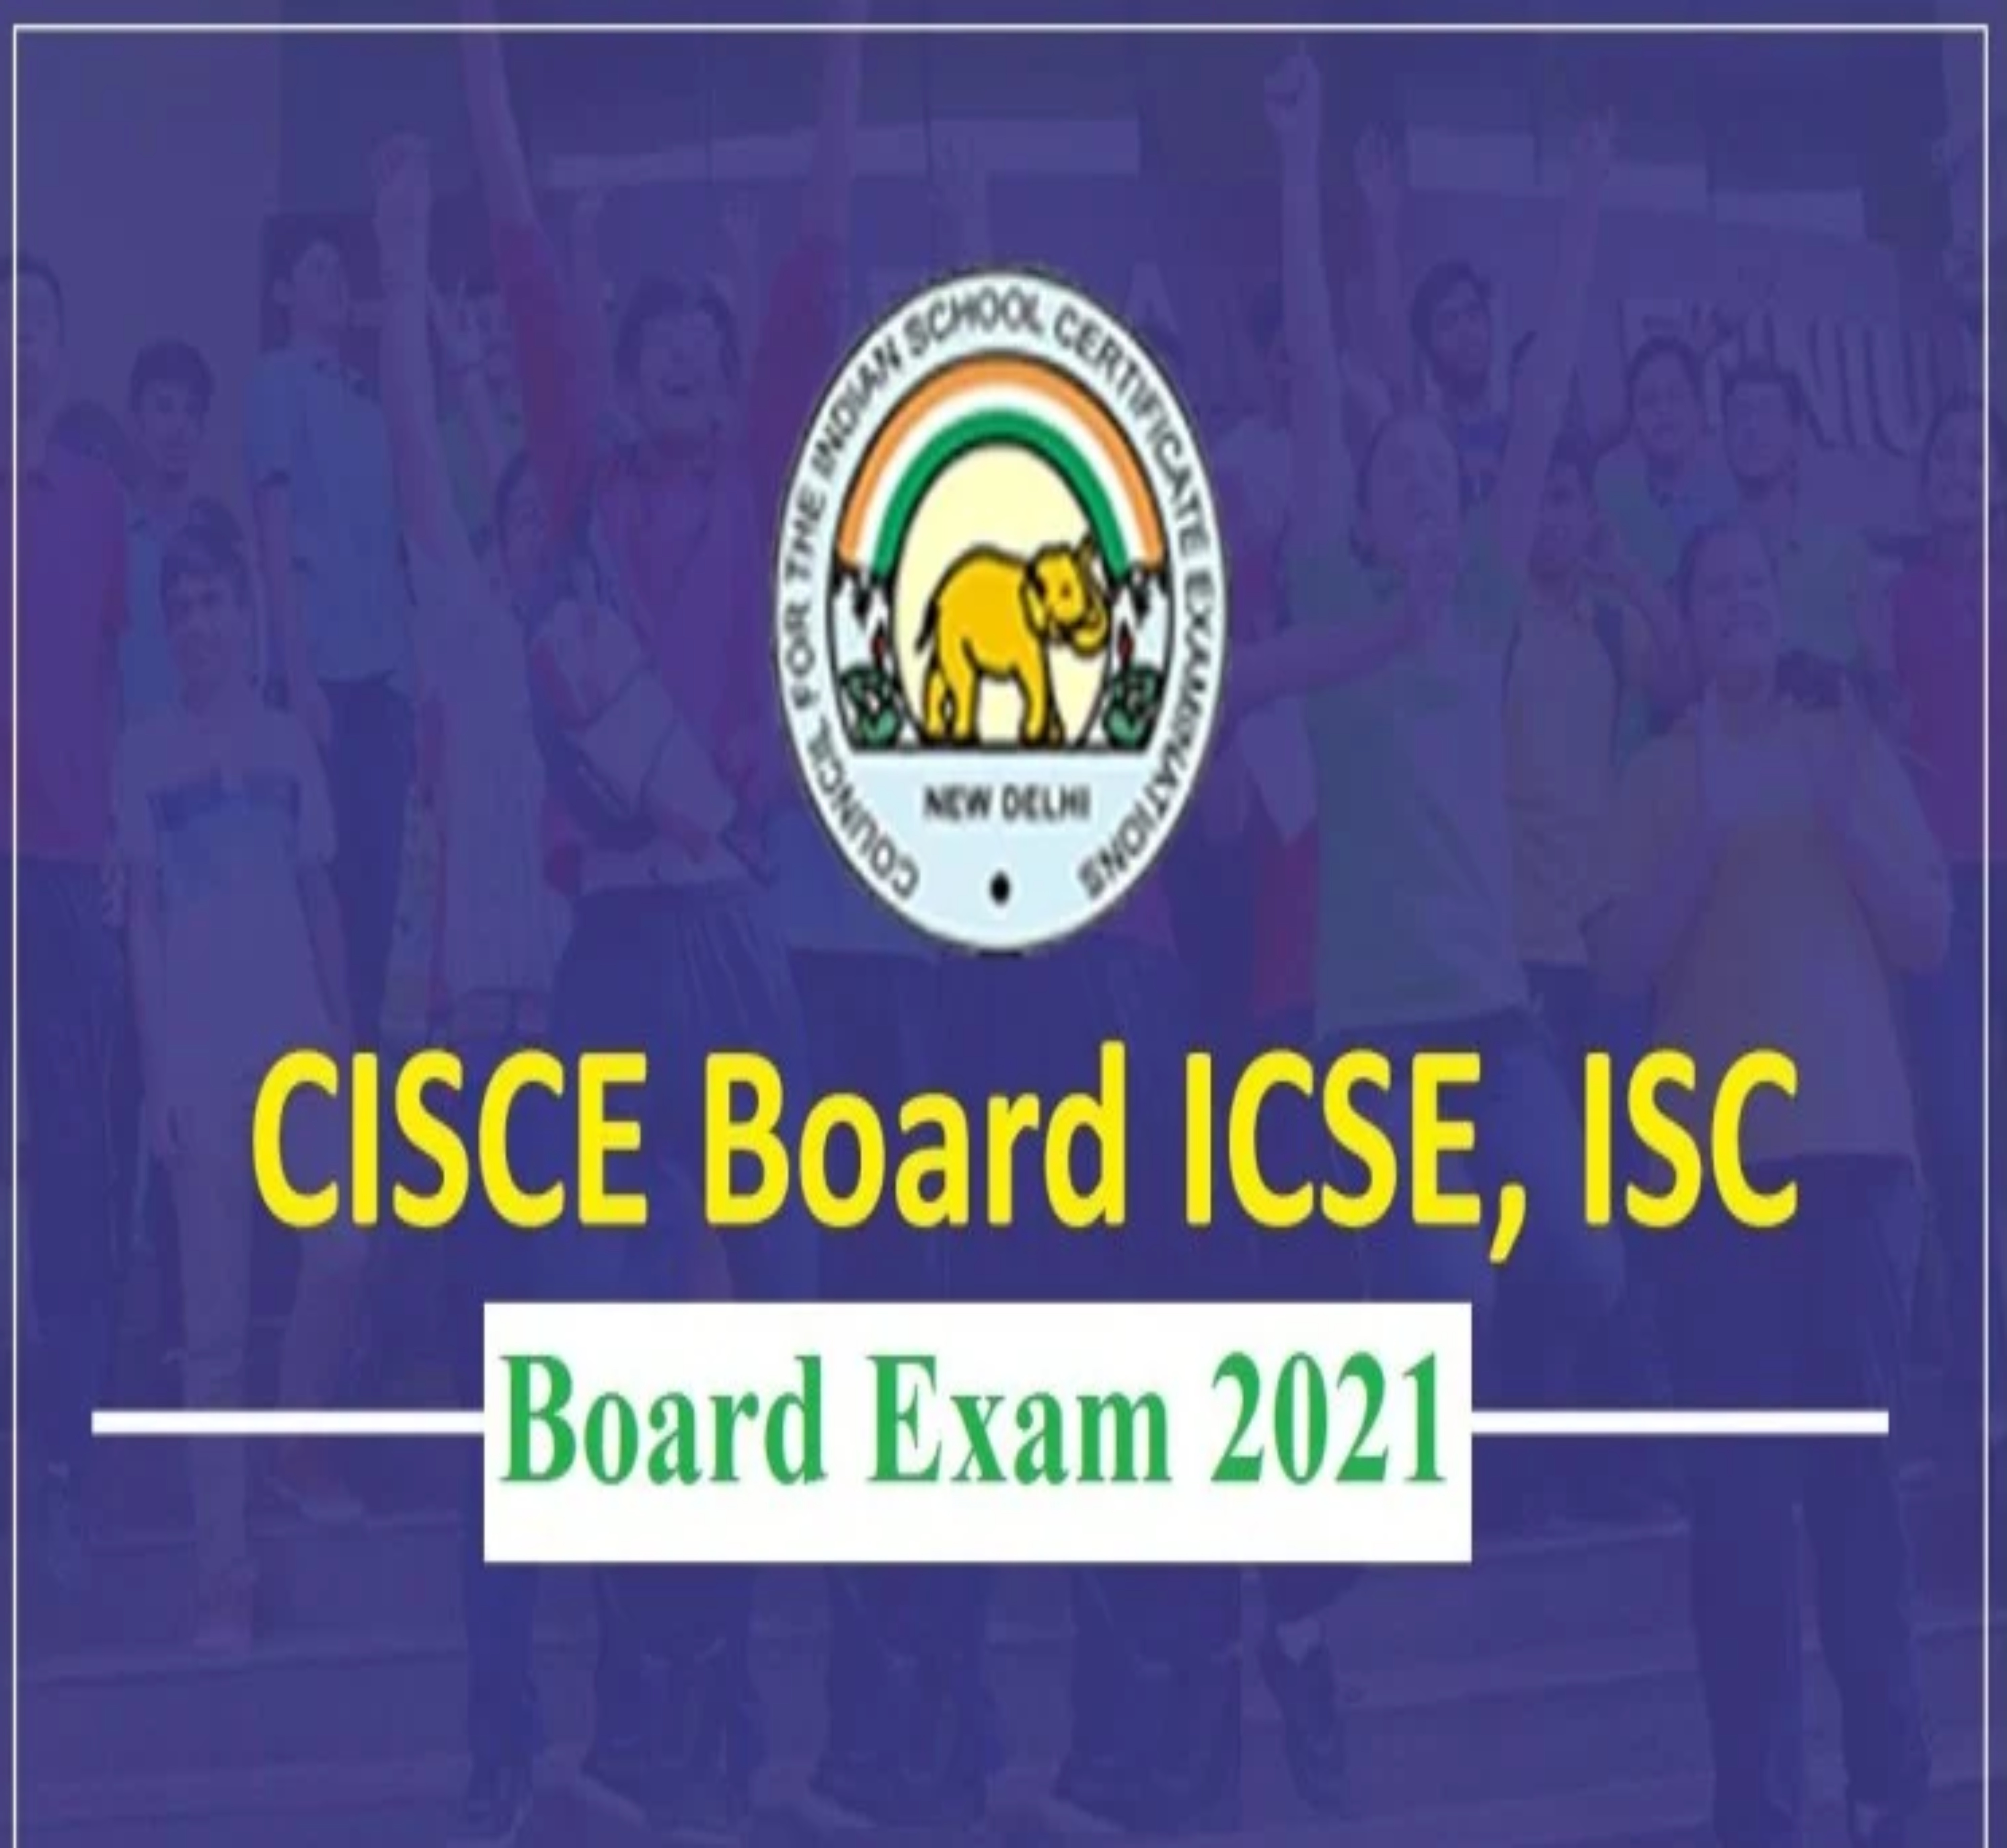 ICSE, ISC Board Exam 2021: जानें, कब से शुरू होगी 10वीं और 12वीं की परीक्षा?